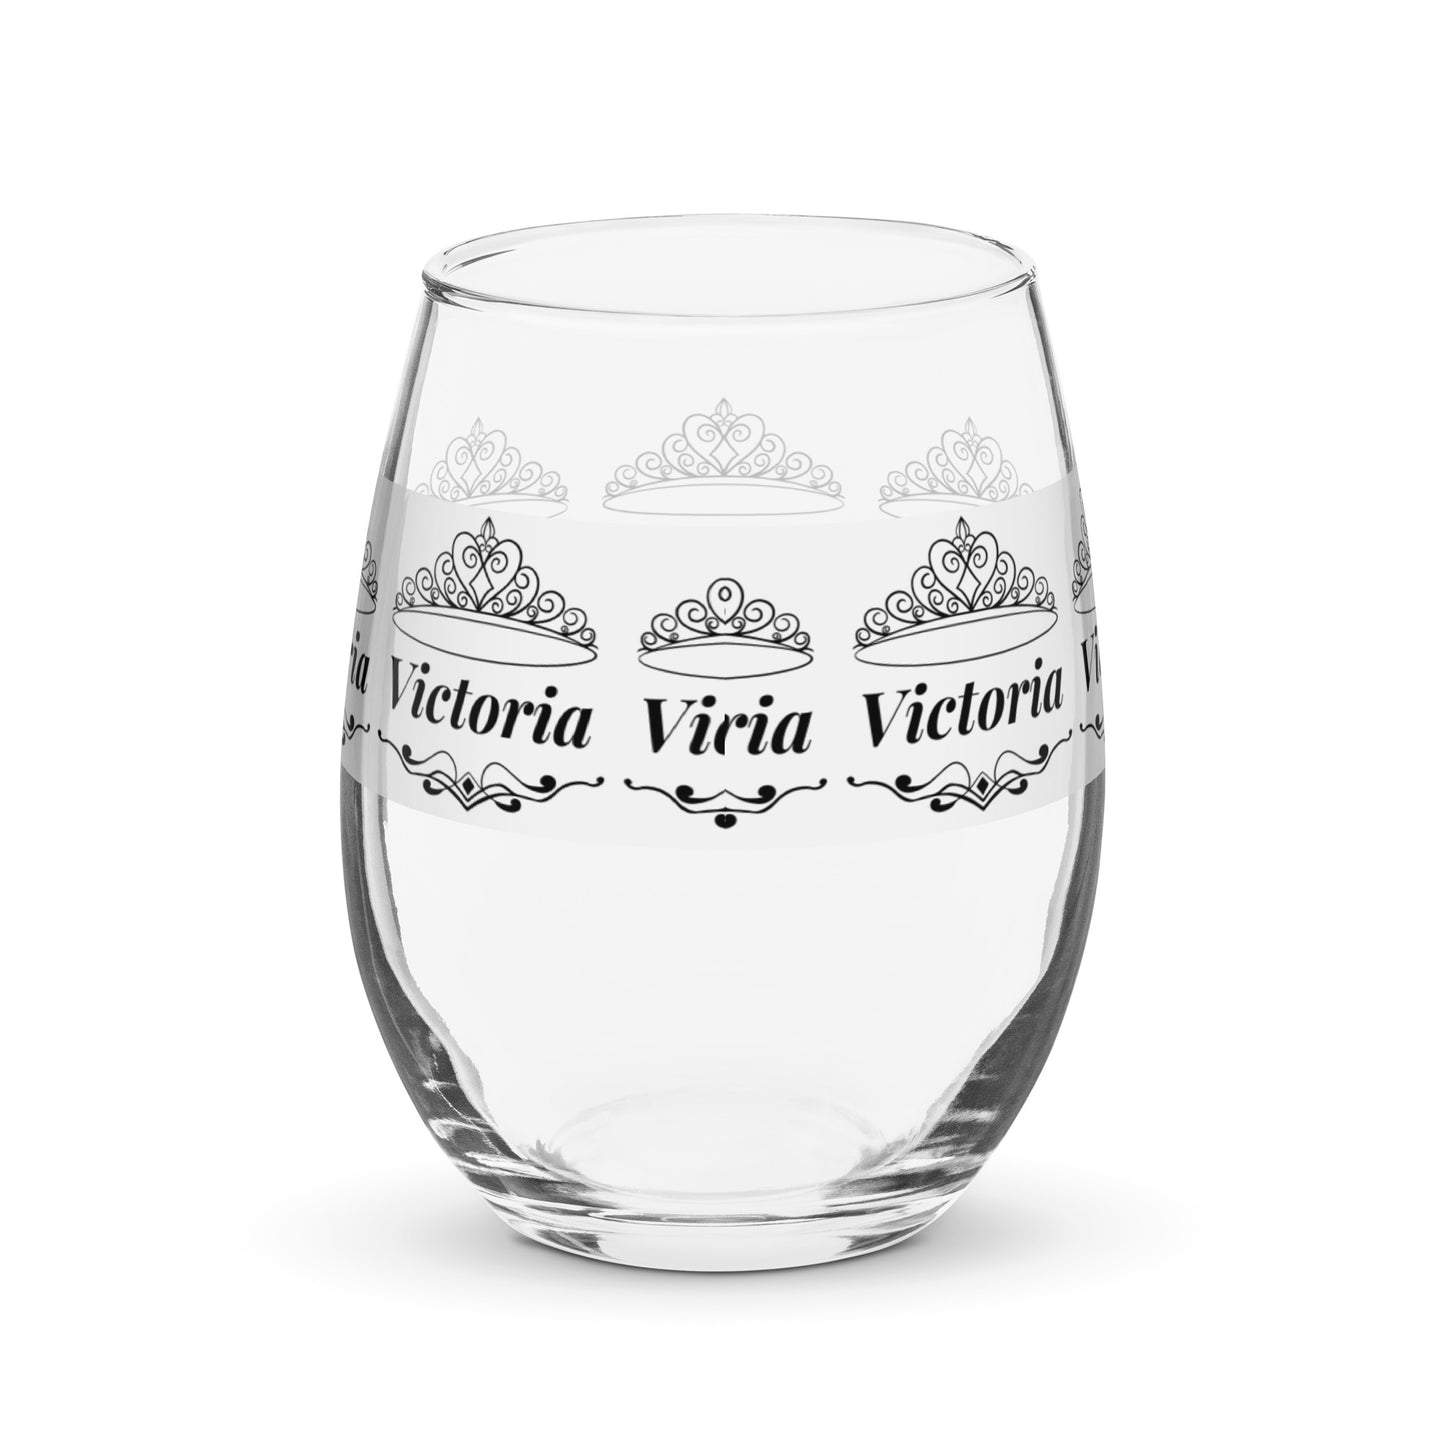 nombre copa de vino copa de vino personalizada Copa de vino Victoria